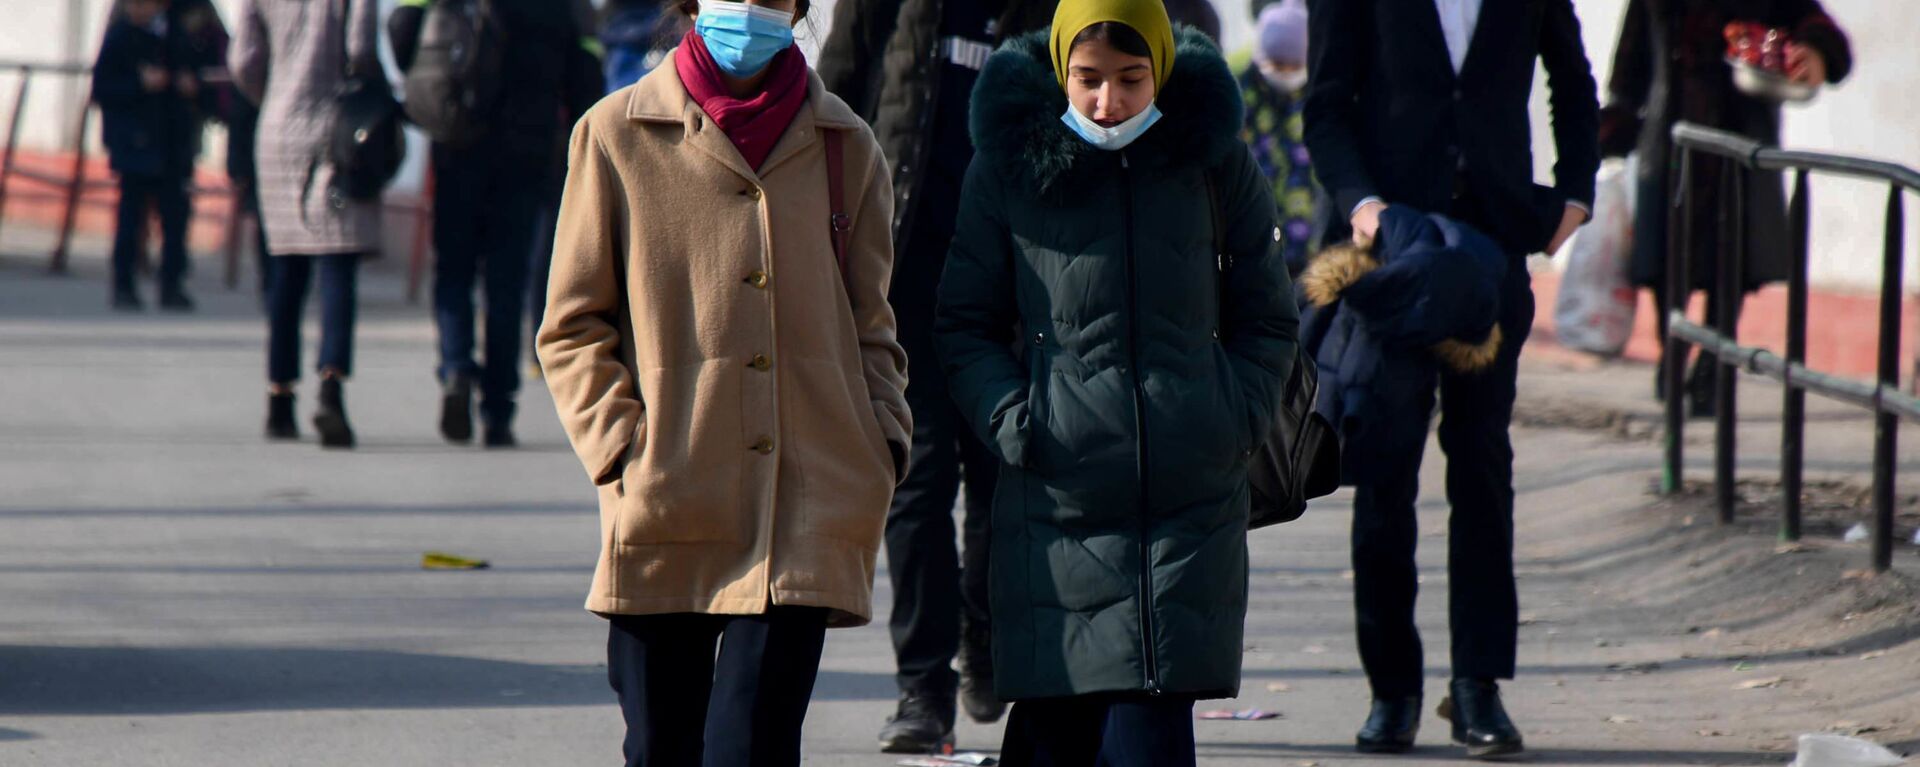 Девушки в защитных масках идут по улице в городе Душанбе - Sputnik Тоҷикистон, 1920, 08.12.2021